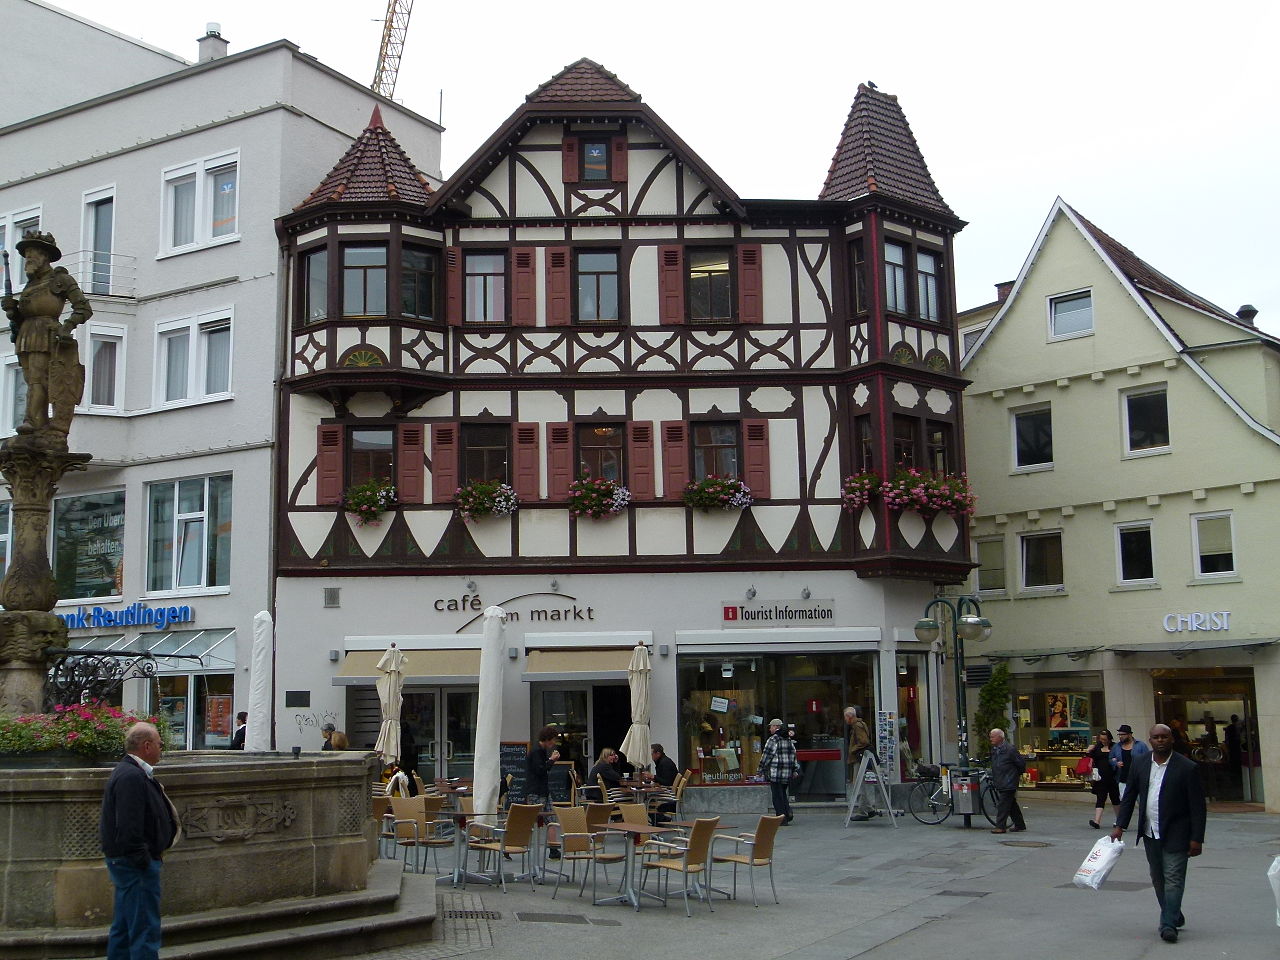 Ройтлинген, Германия: интересные достопримечательности, топ-5 интересных дел и занятий, лучшие рестораны, отзывы туристов